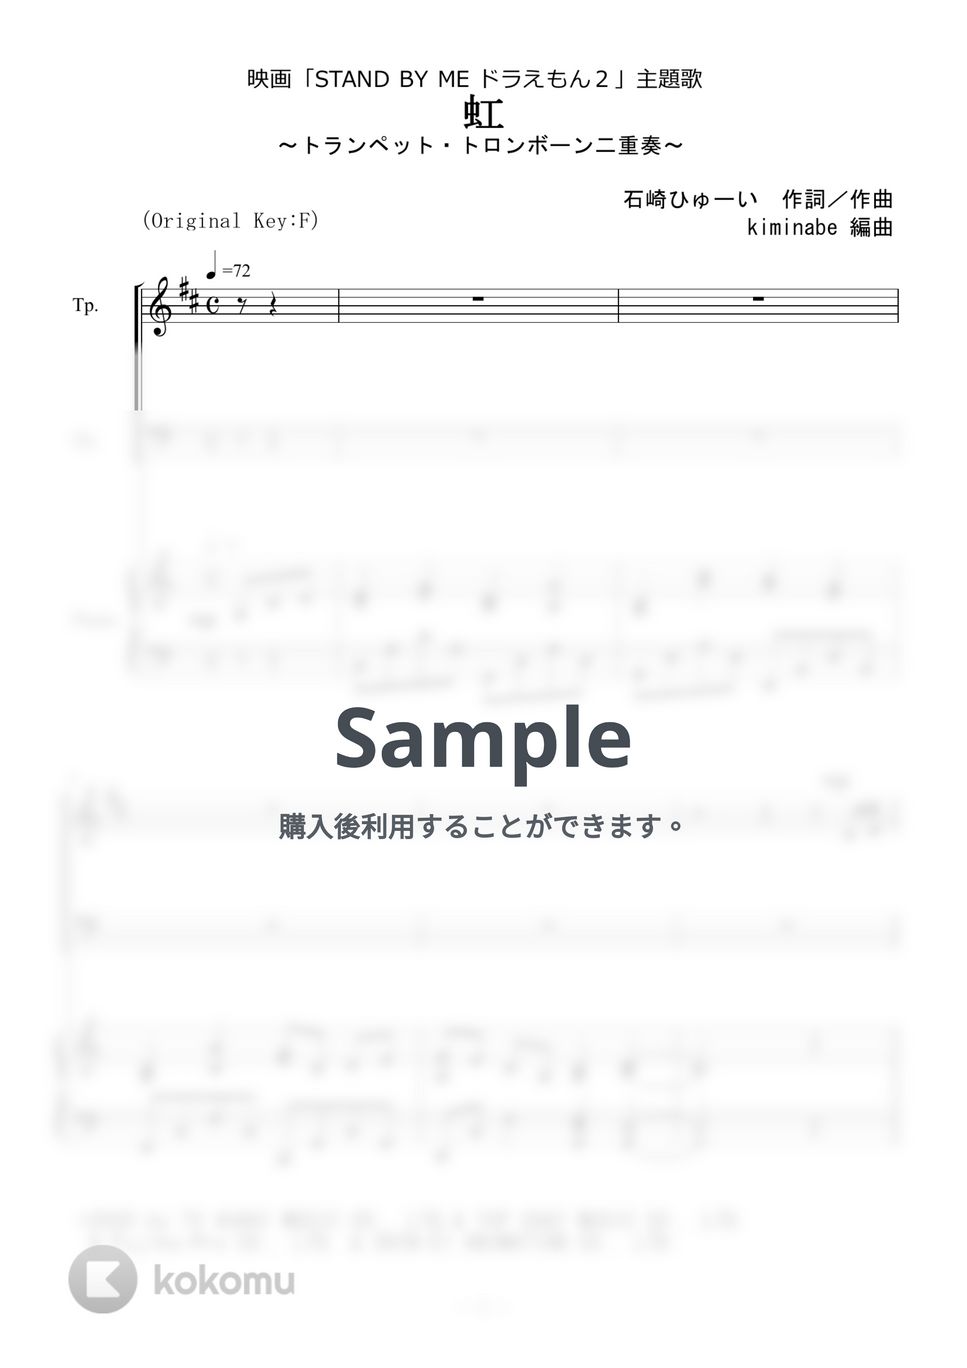 菅田将暉 - 虹 (トランペット・トロンボーン二重奏) by kiminabe